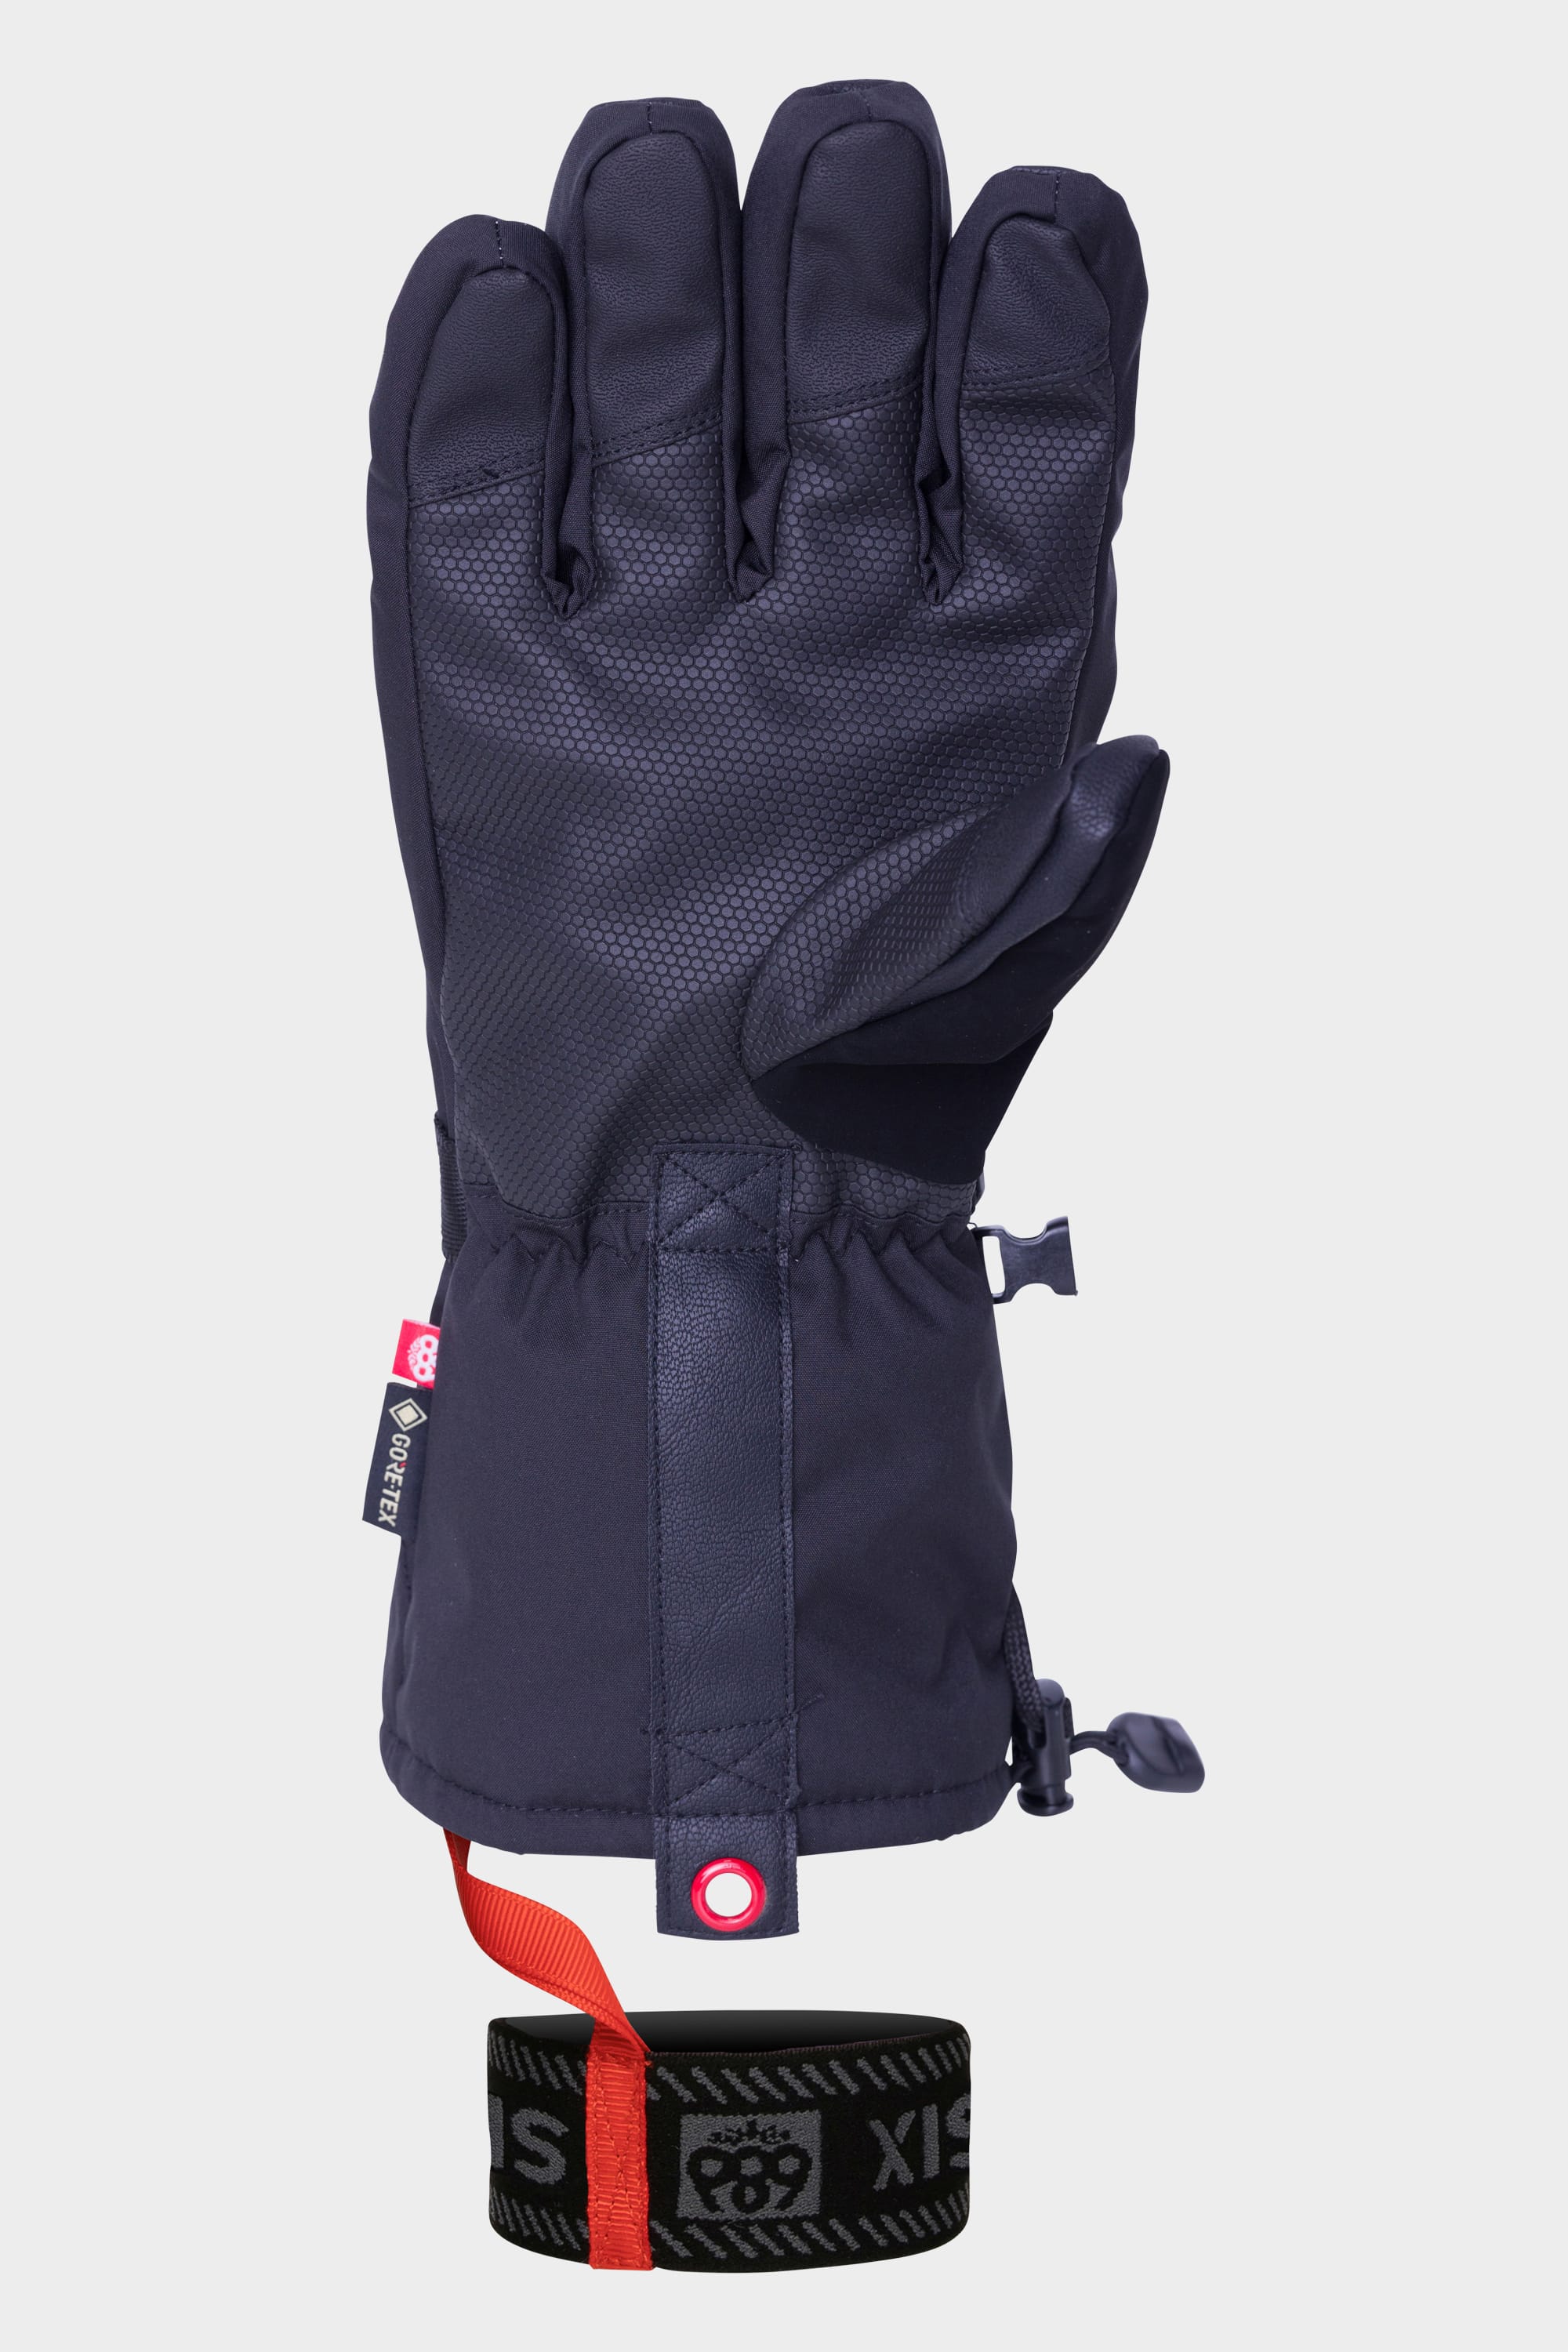 686 Men's GORE-TEX SMARTY 3-in-1 Gauntlet Glove – 686.com